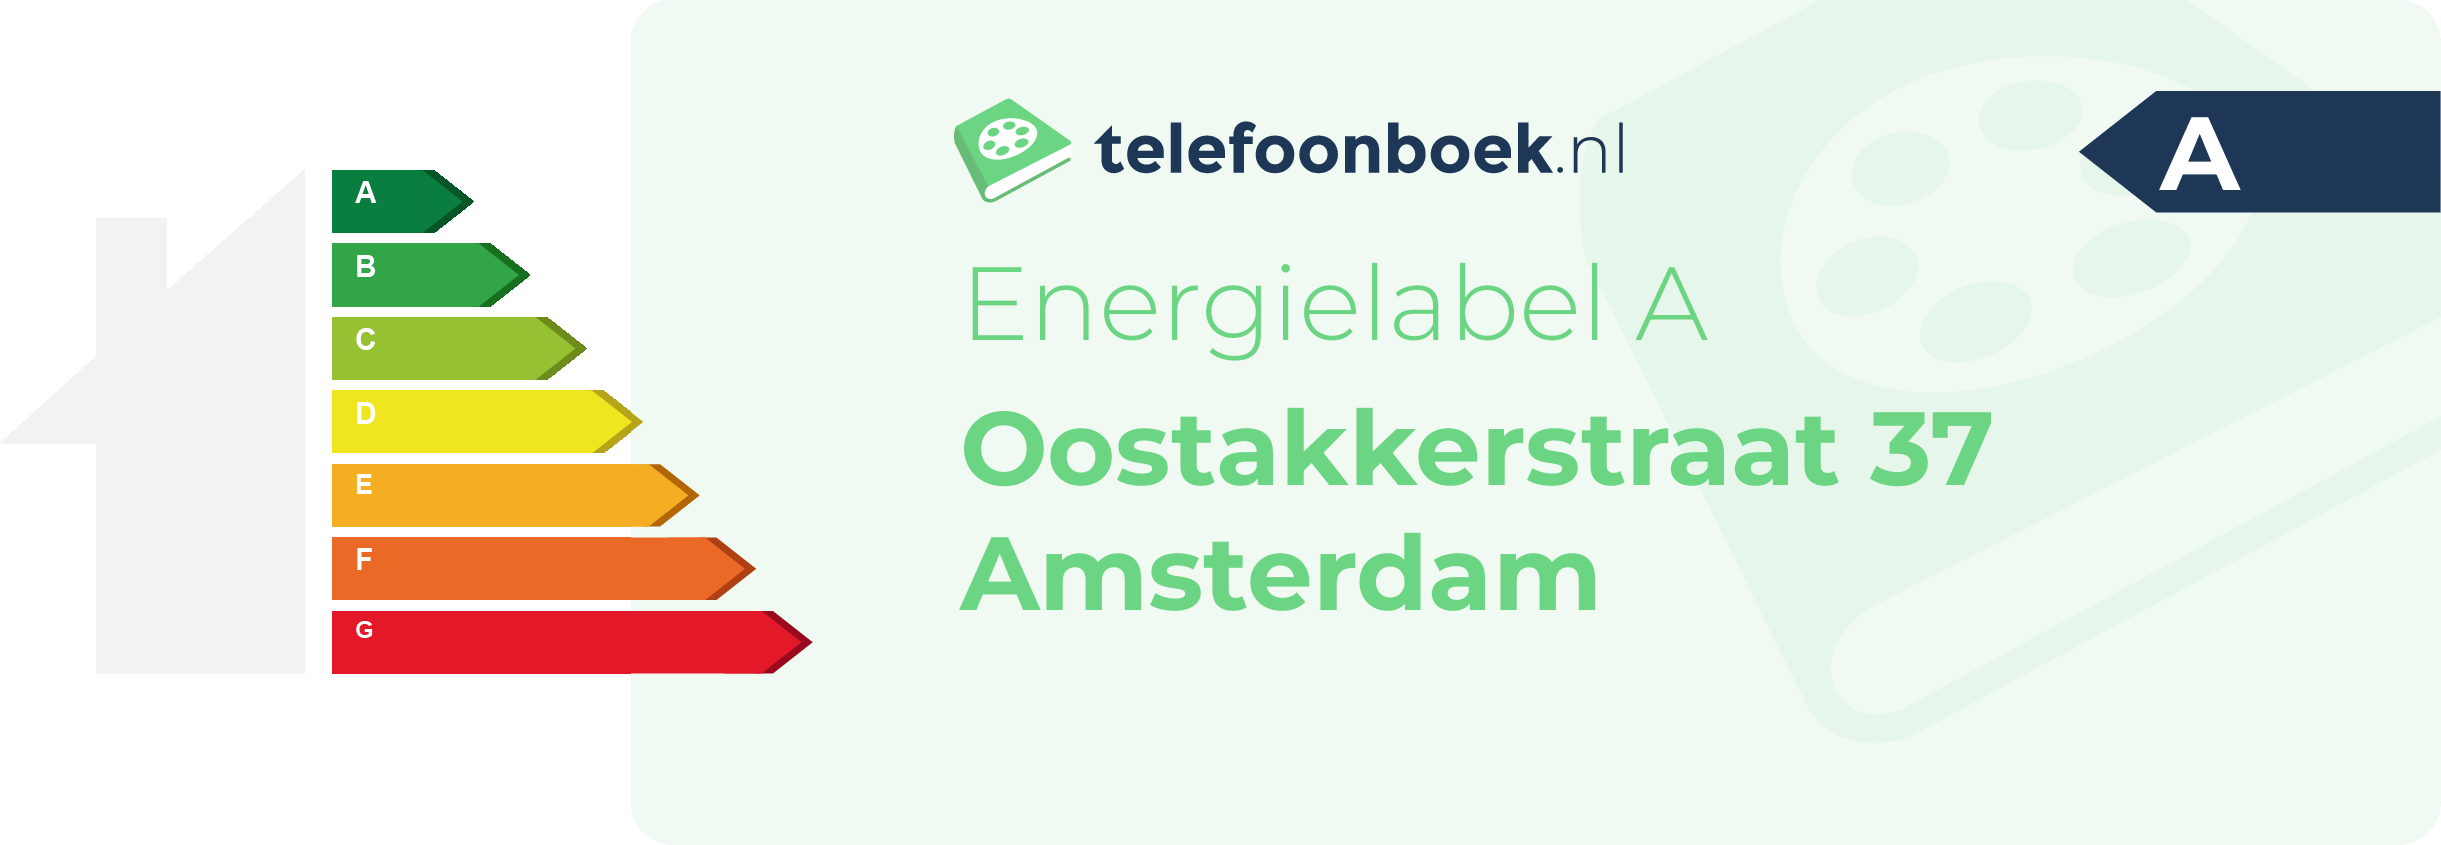 Energielabel Oostakkerstraat 37 Amsterdam